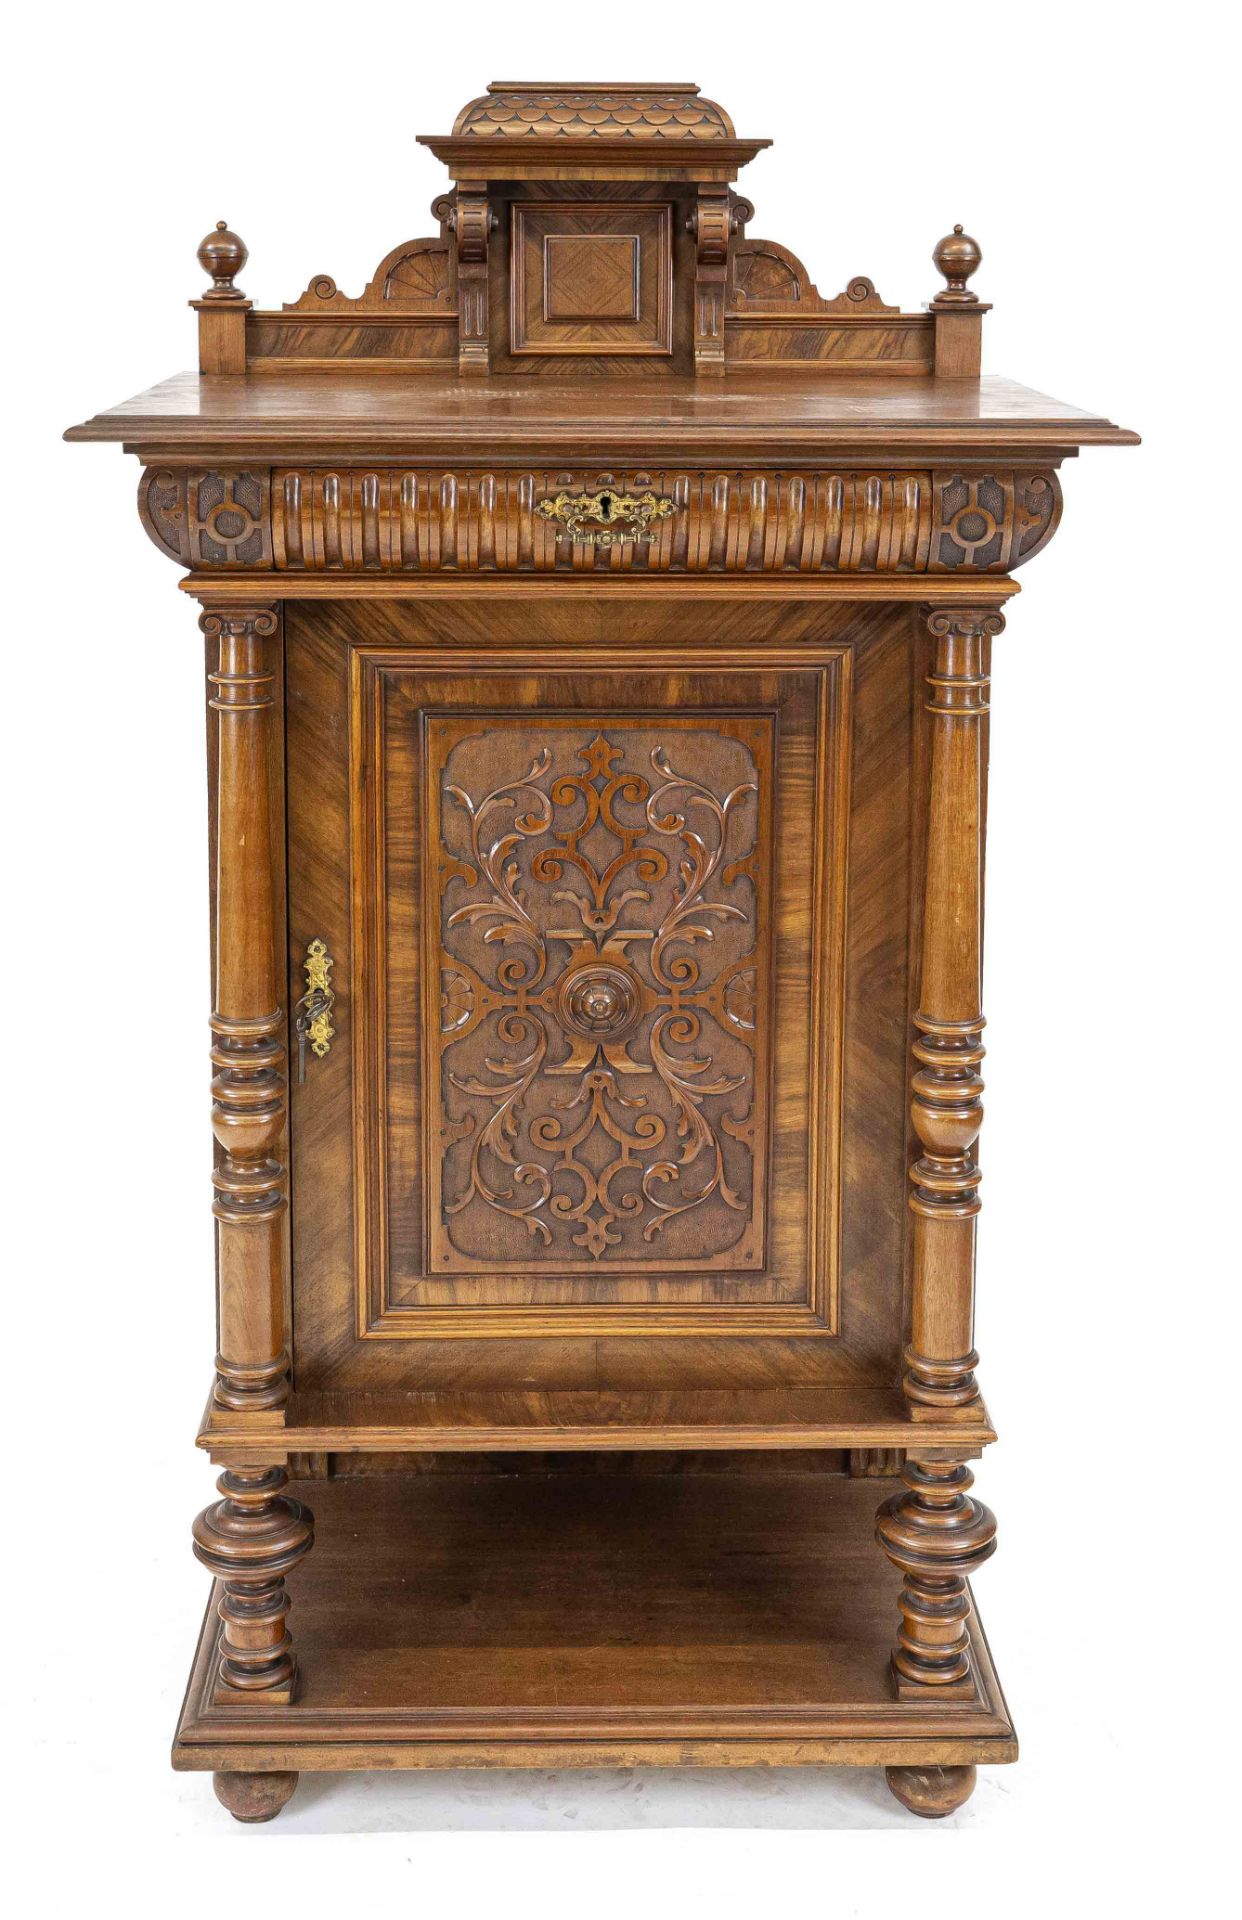 Wilhelminian-style semi-cabinet from around 1880, walnut, 1-door body with drawer, 153 x 80 x 50 cm